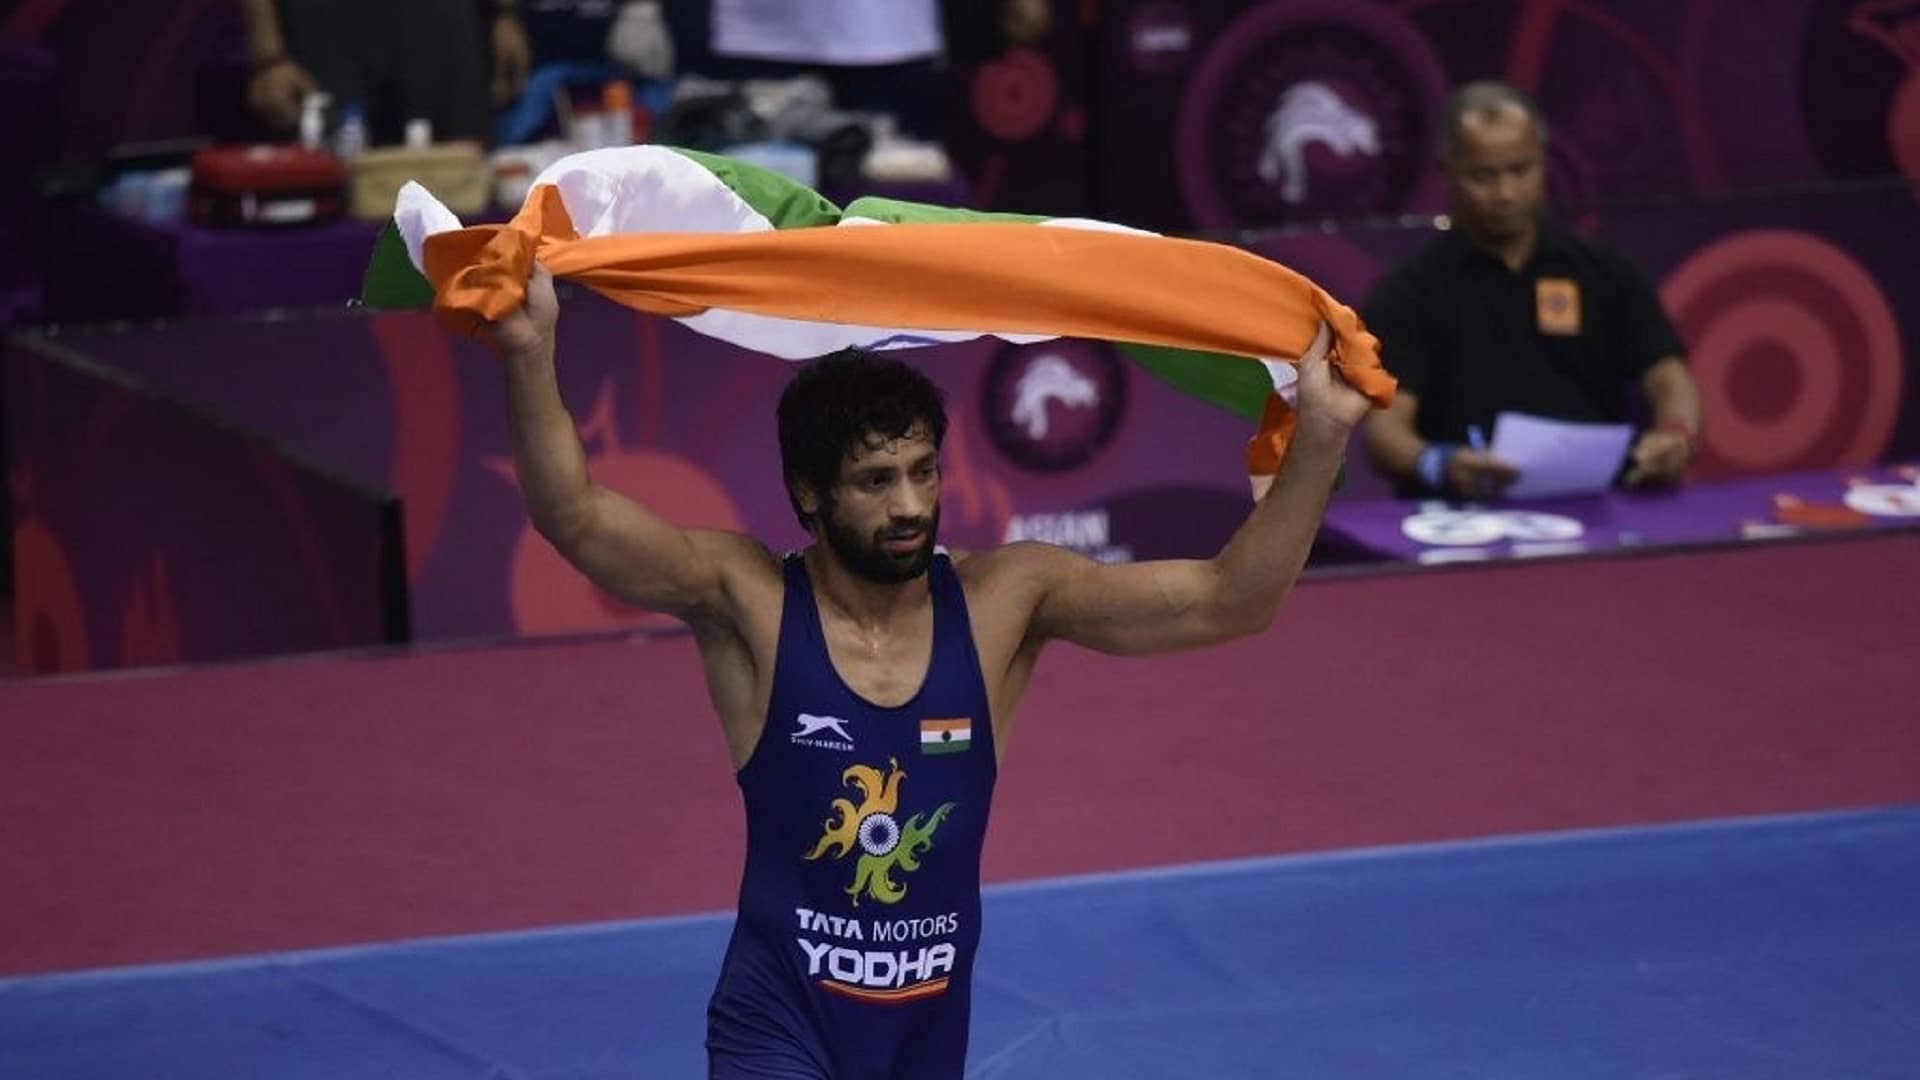 Dia at tokyo olympics ravi dahiya confirms medal enters fals kg